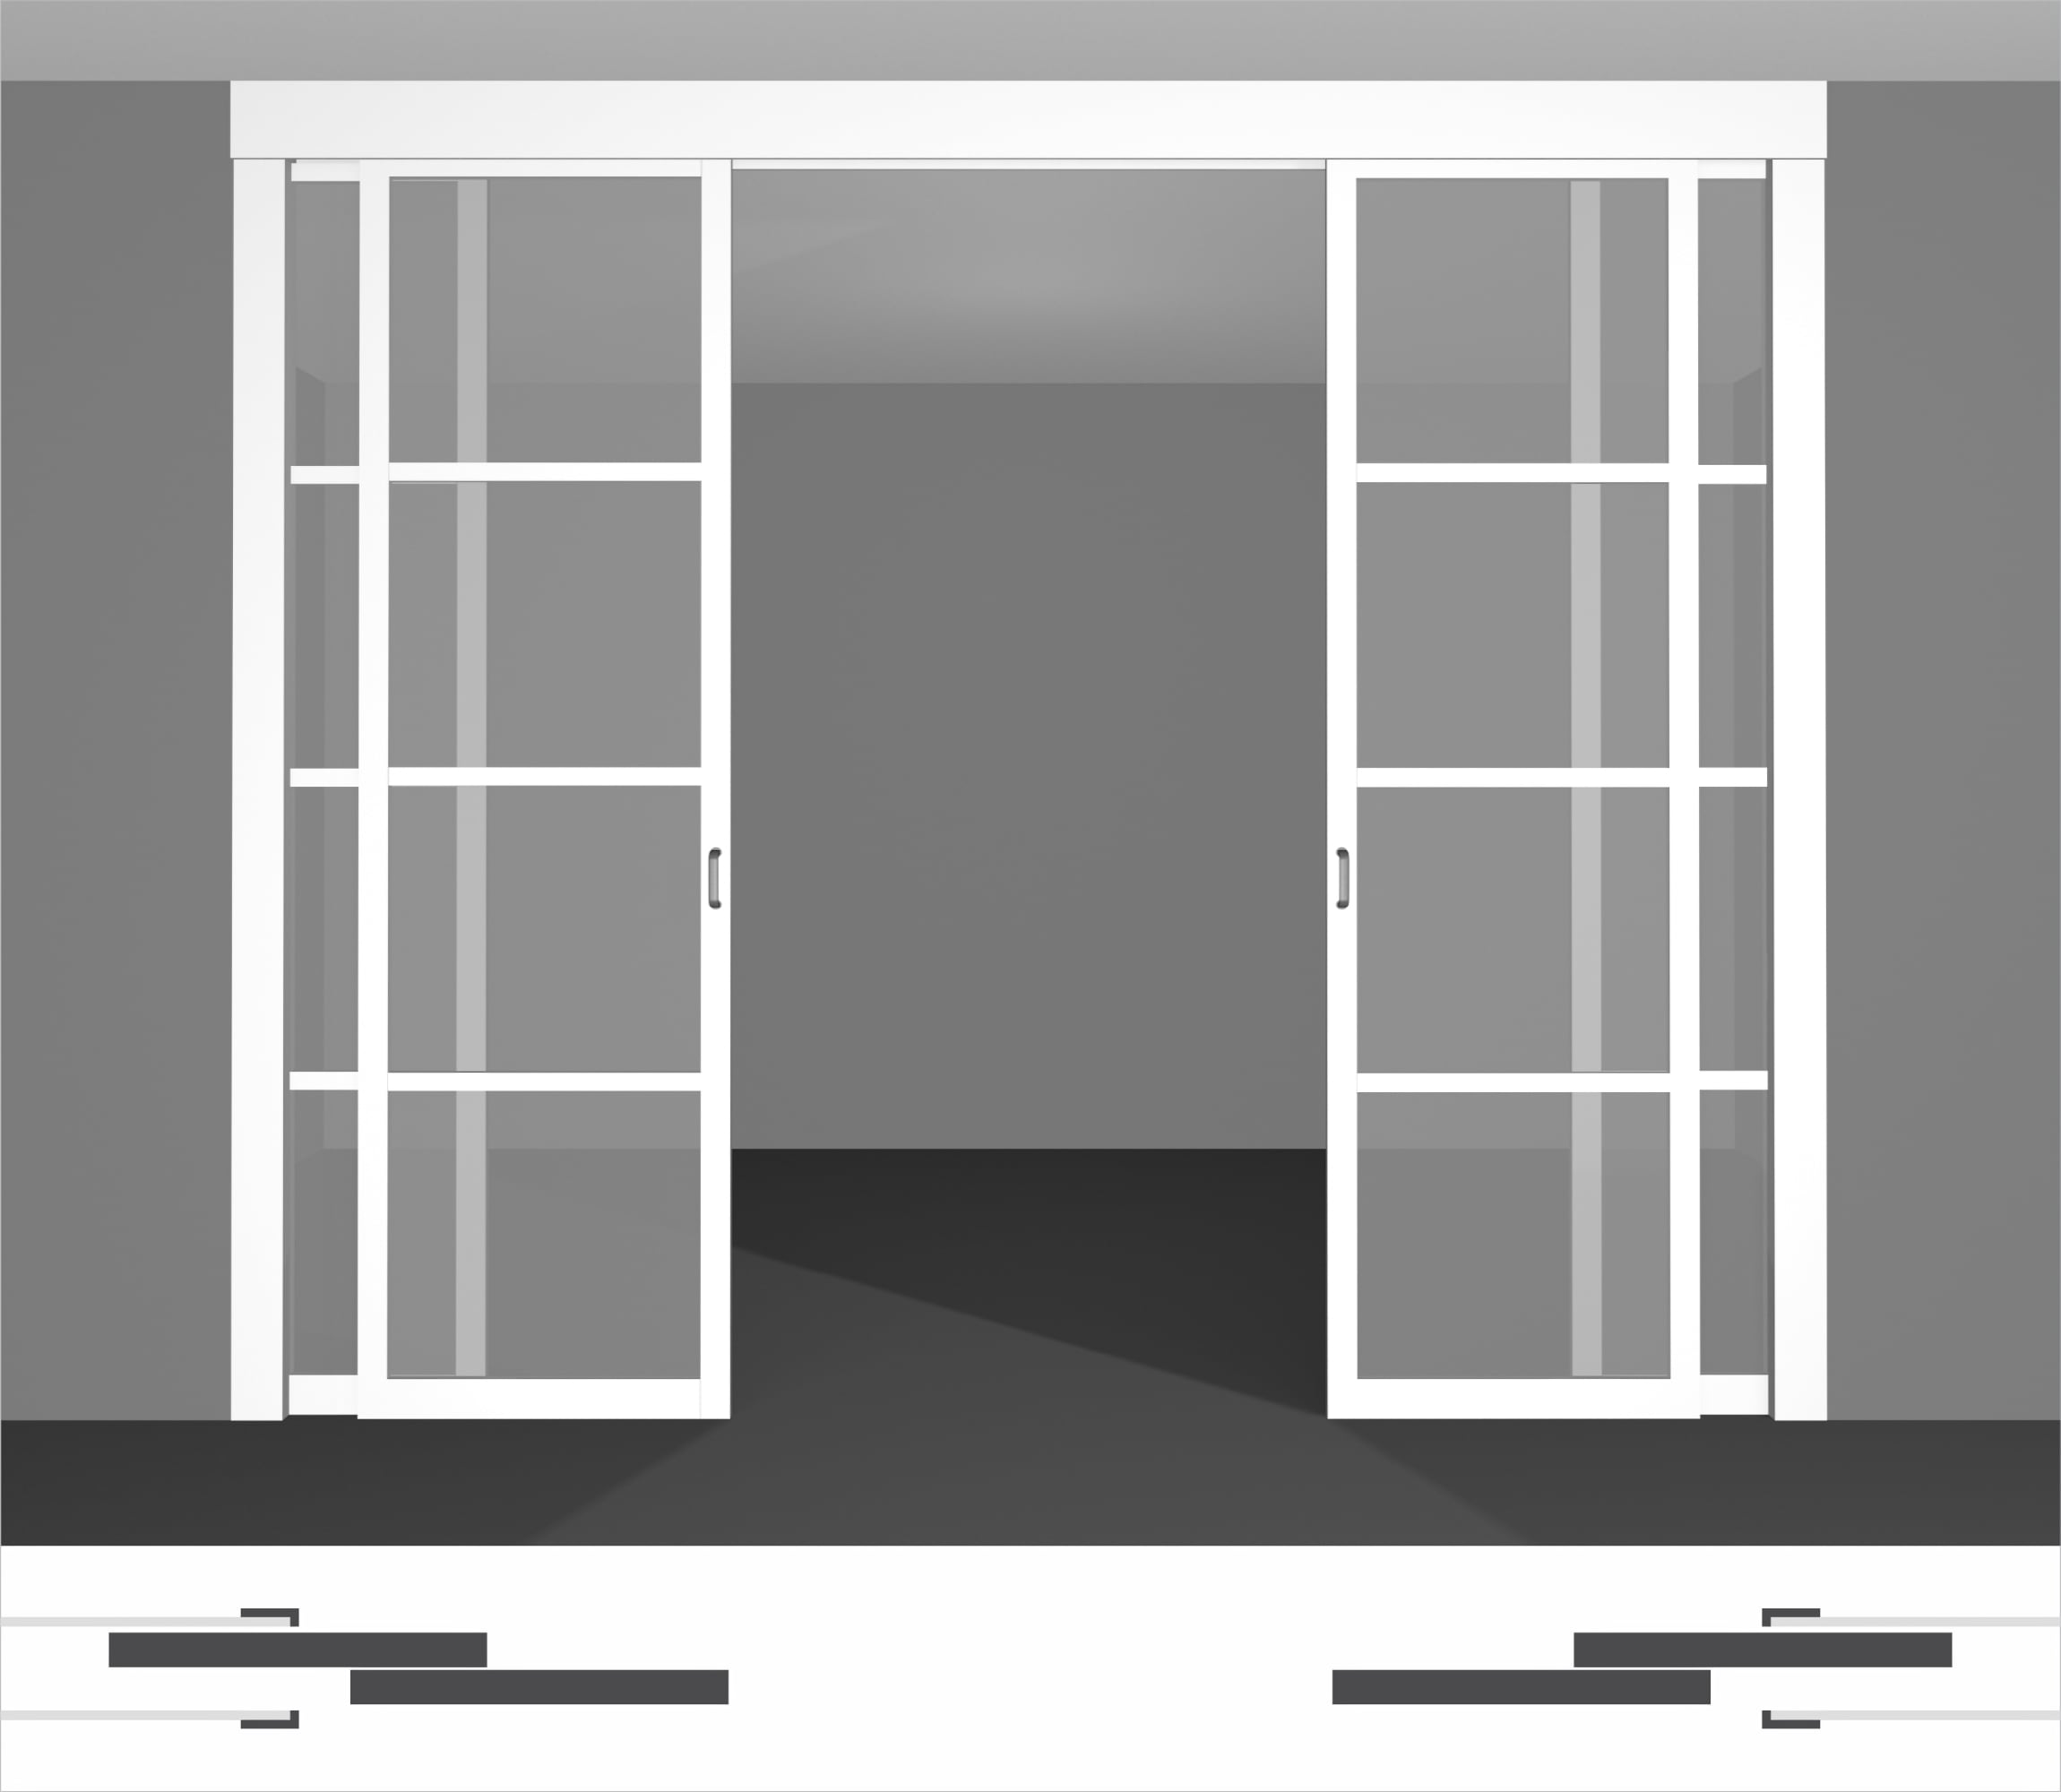 Раздвижные двери в стену P02.2dvs двойной комплект под потолок • установка внутрь стены